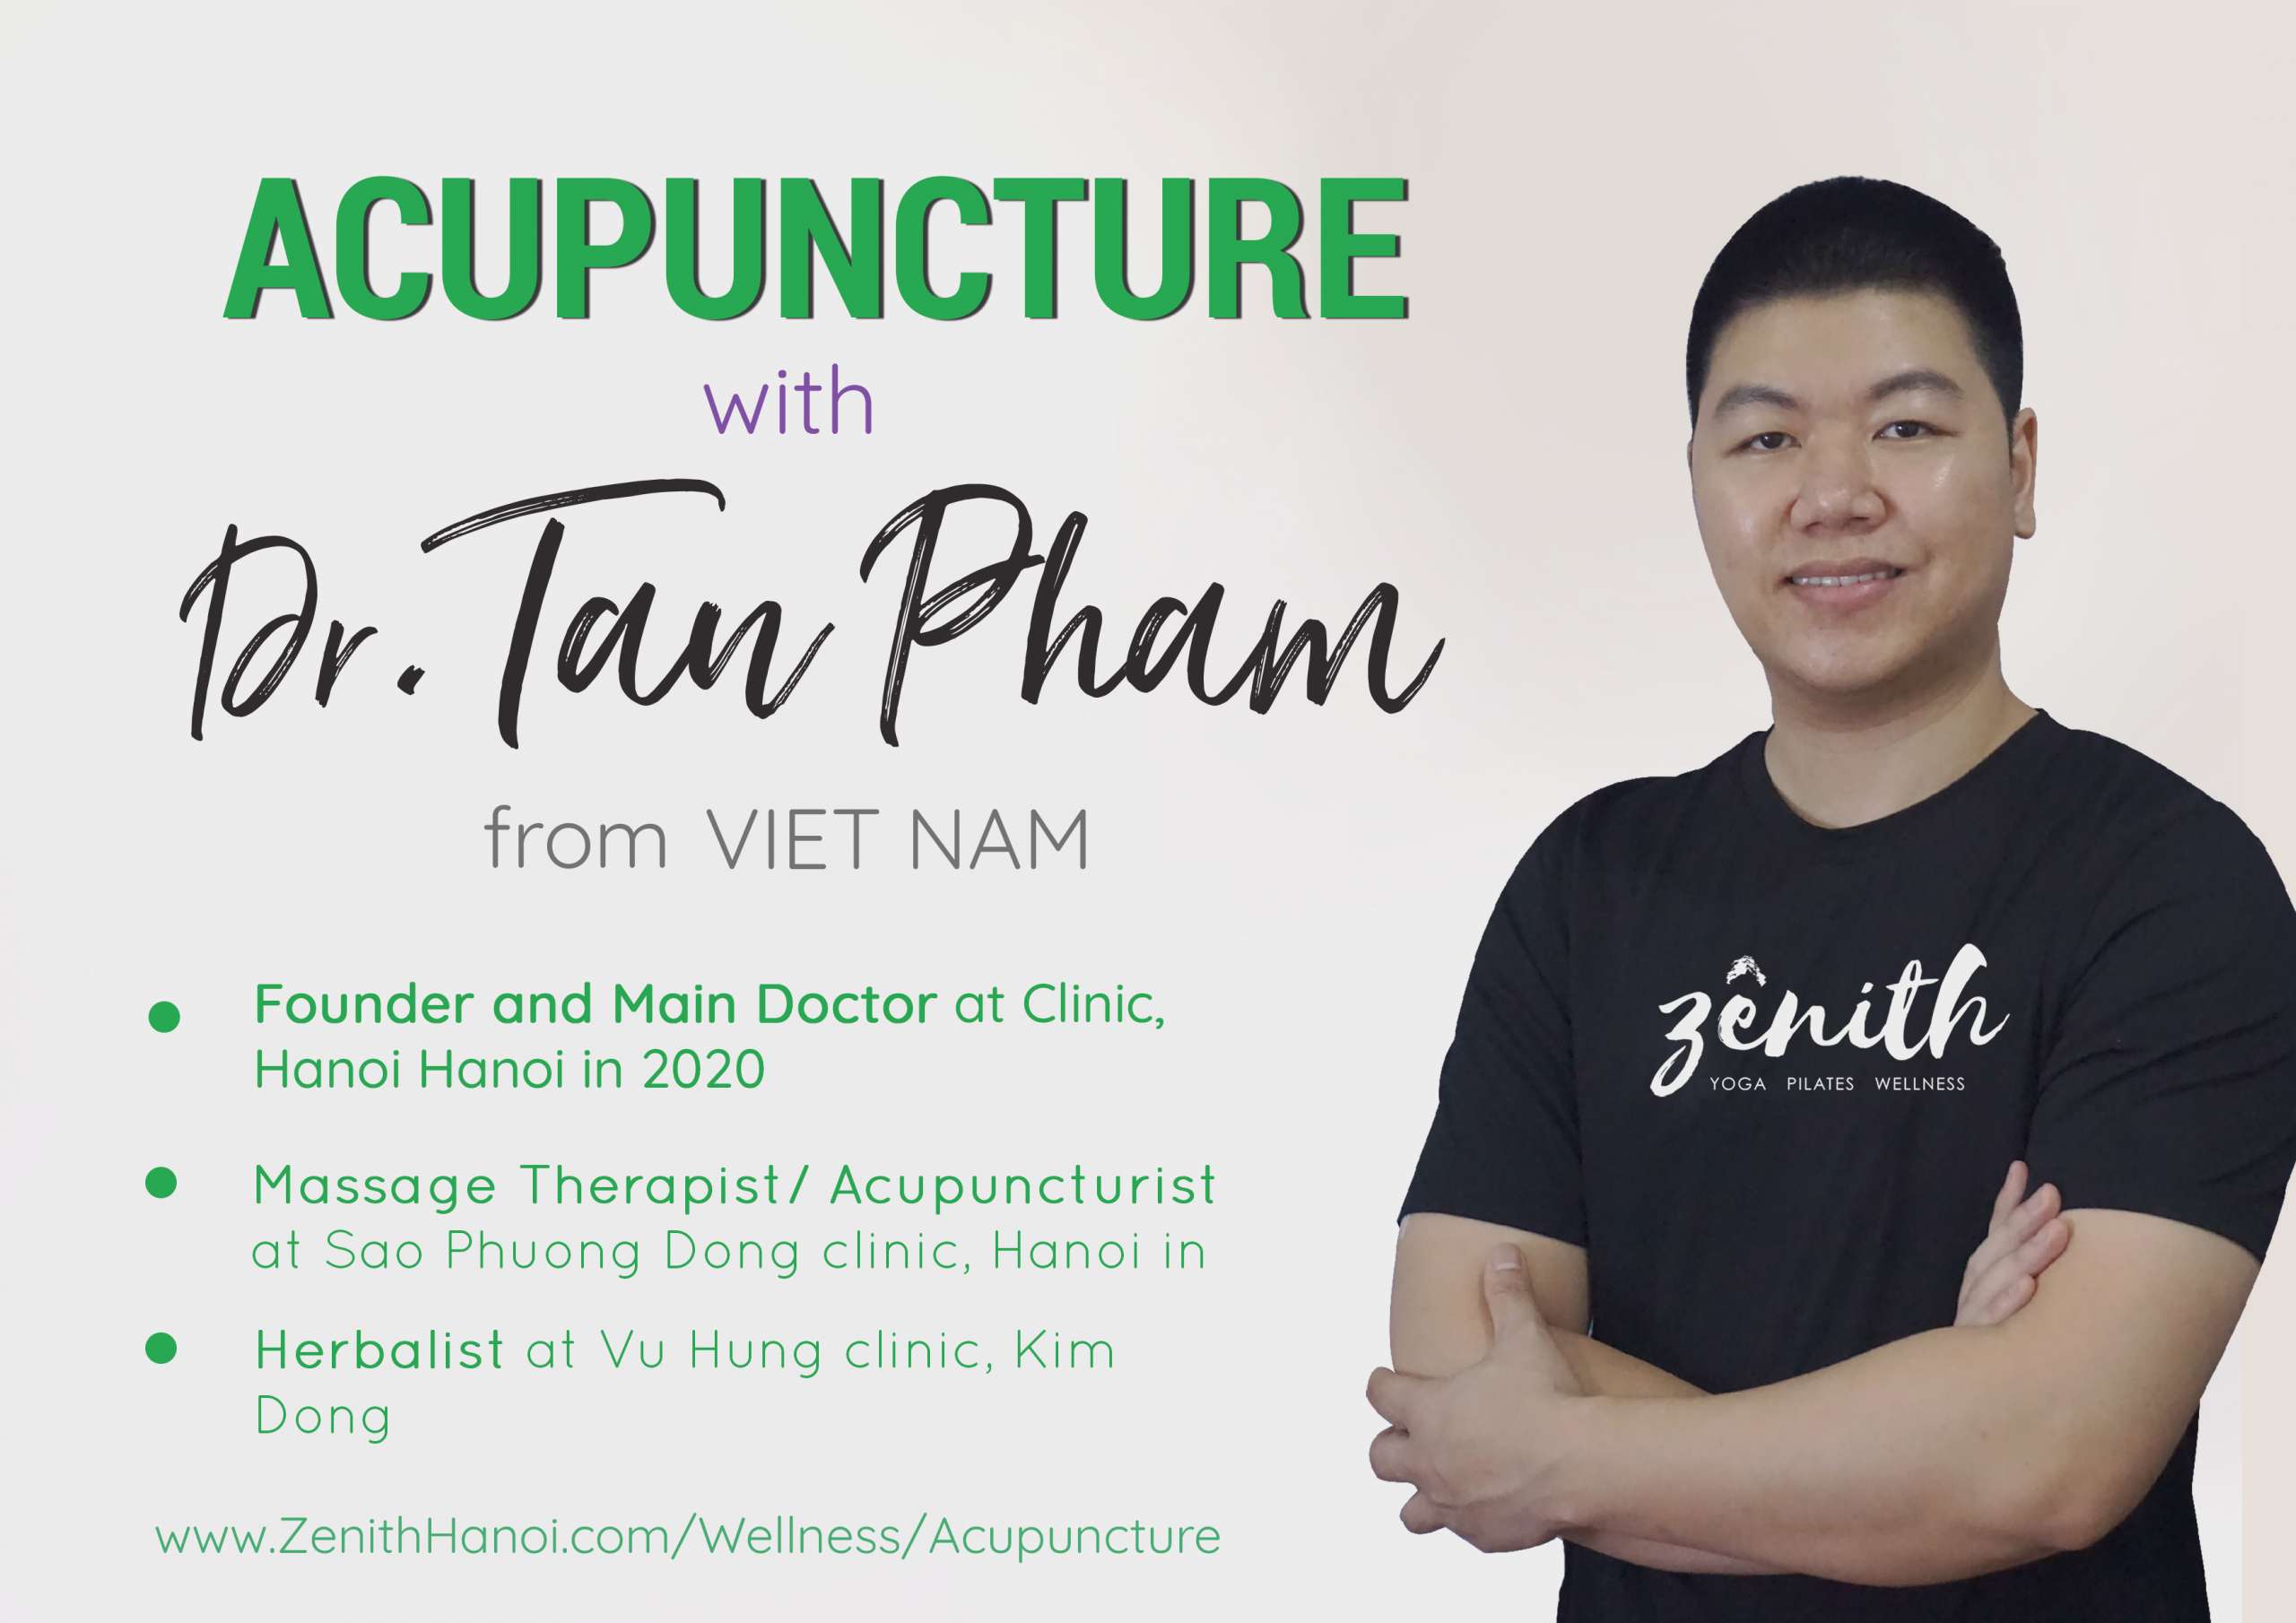 Dr Tan Pham